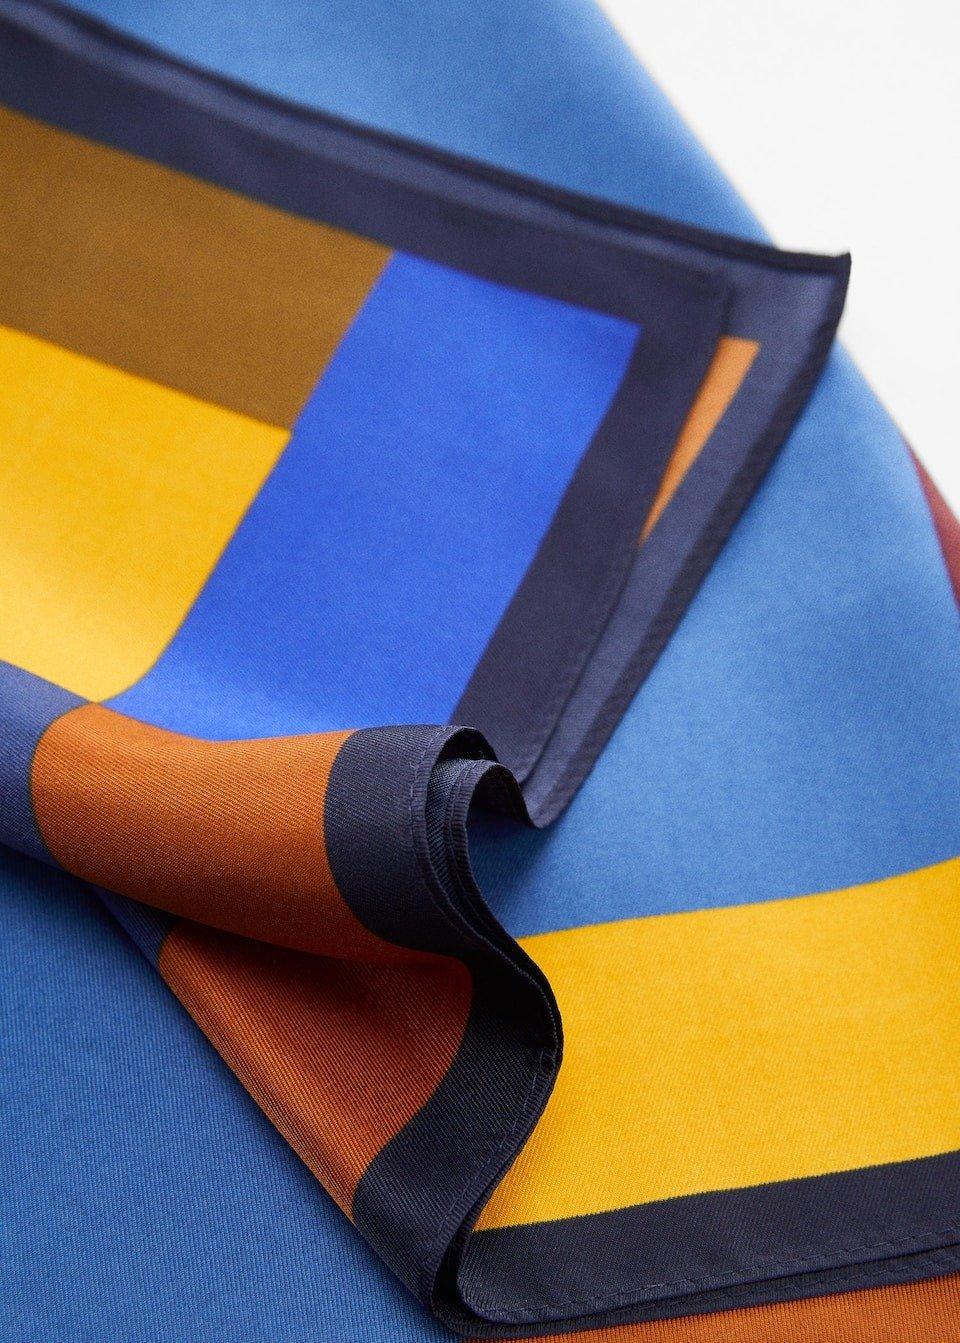 Mango - Blue Geometric Printed Foulard